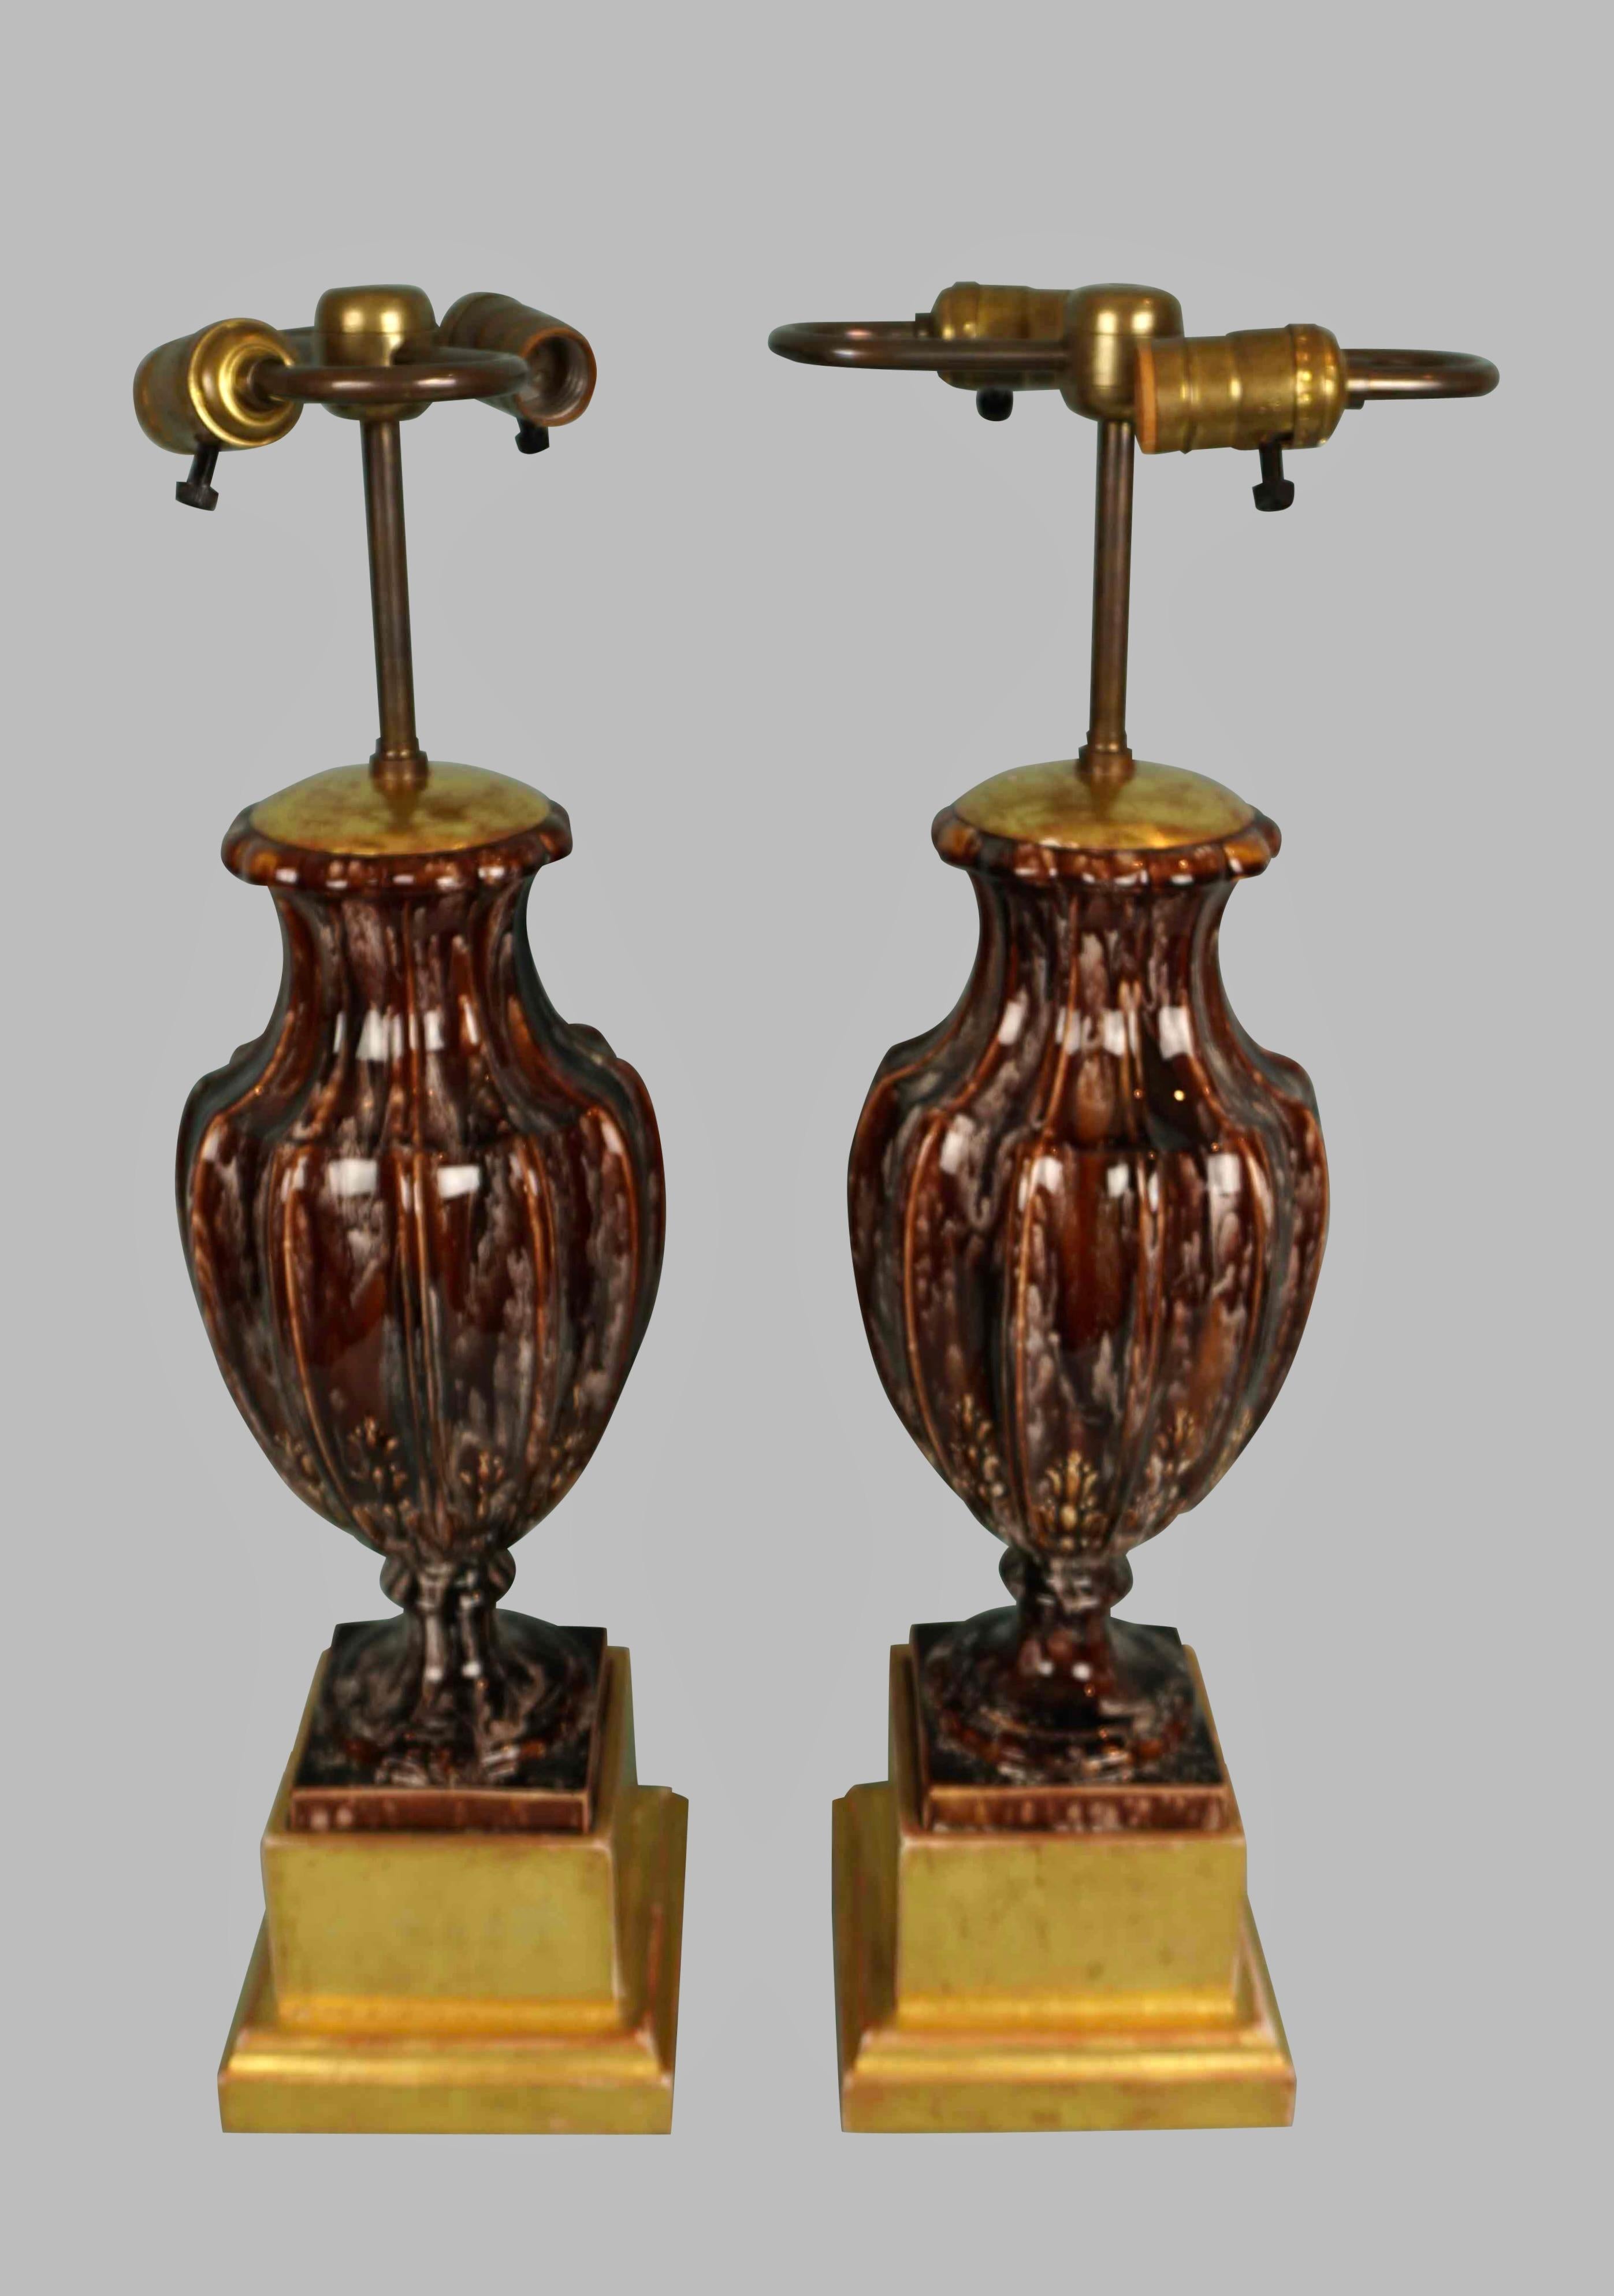 Ein attraktives und ungewöhnliches Paar brauner und cremefarbener Porzellan- oder Steingutvasen im neoklassischen Stil mit eingeritzten Details, die jetzt elektrifiziert und auf vergoldeten Sockeln montiert sind. Wahrscheinlich im ersten Viertel des